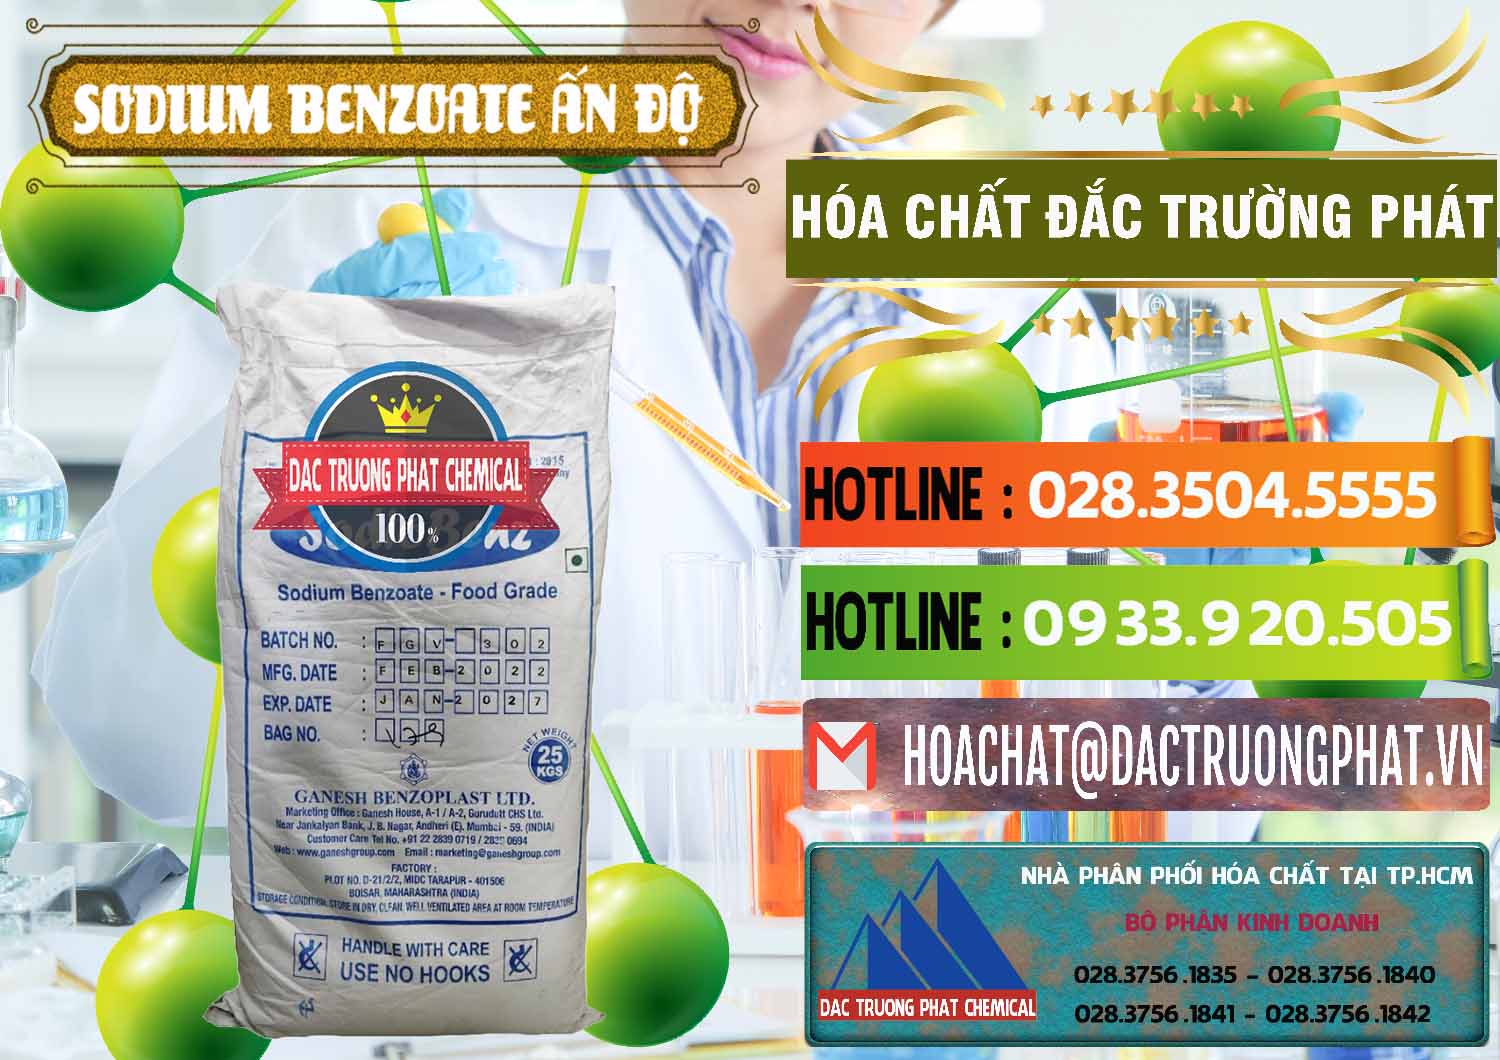 Cty chuyên kinh doanh và bán Sodium Benzoate - Mốc Bột Ấn Độ India - 0361 - Bán & cung cấp hóa chất tại TP.HCM - cungcaphoachat.com.vn